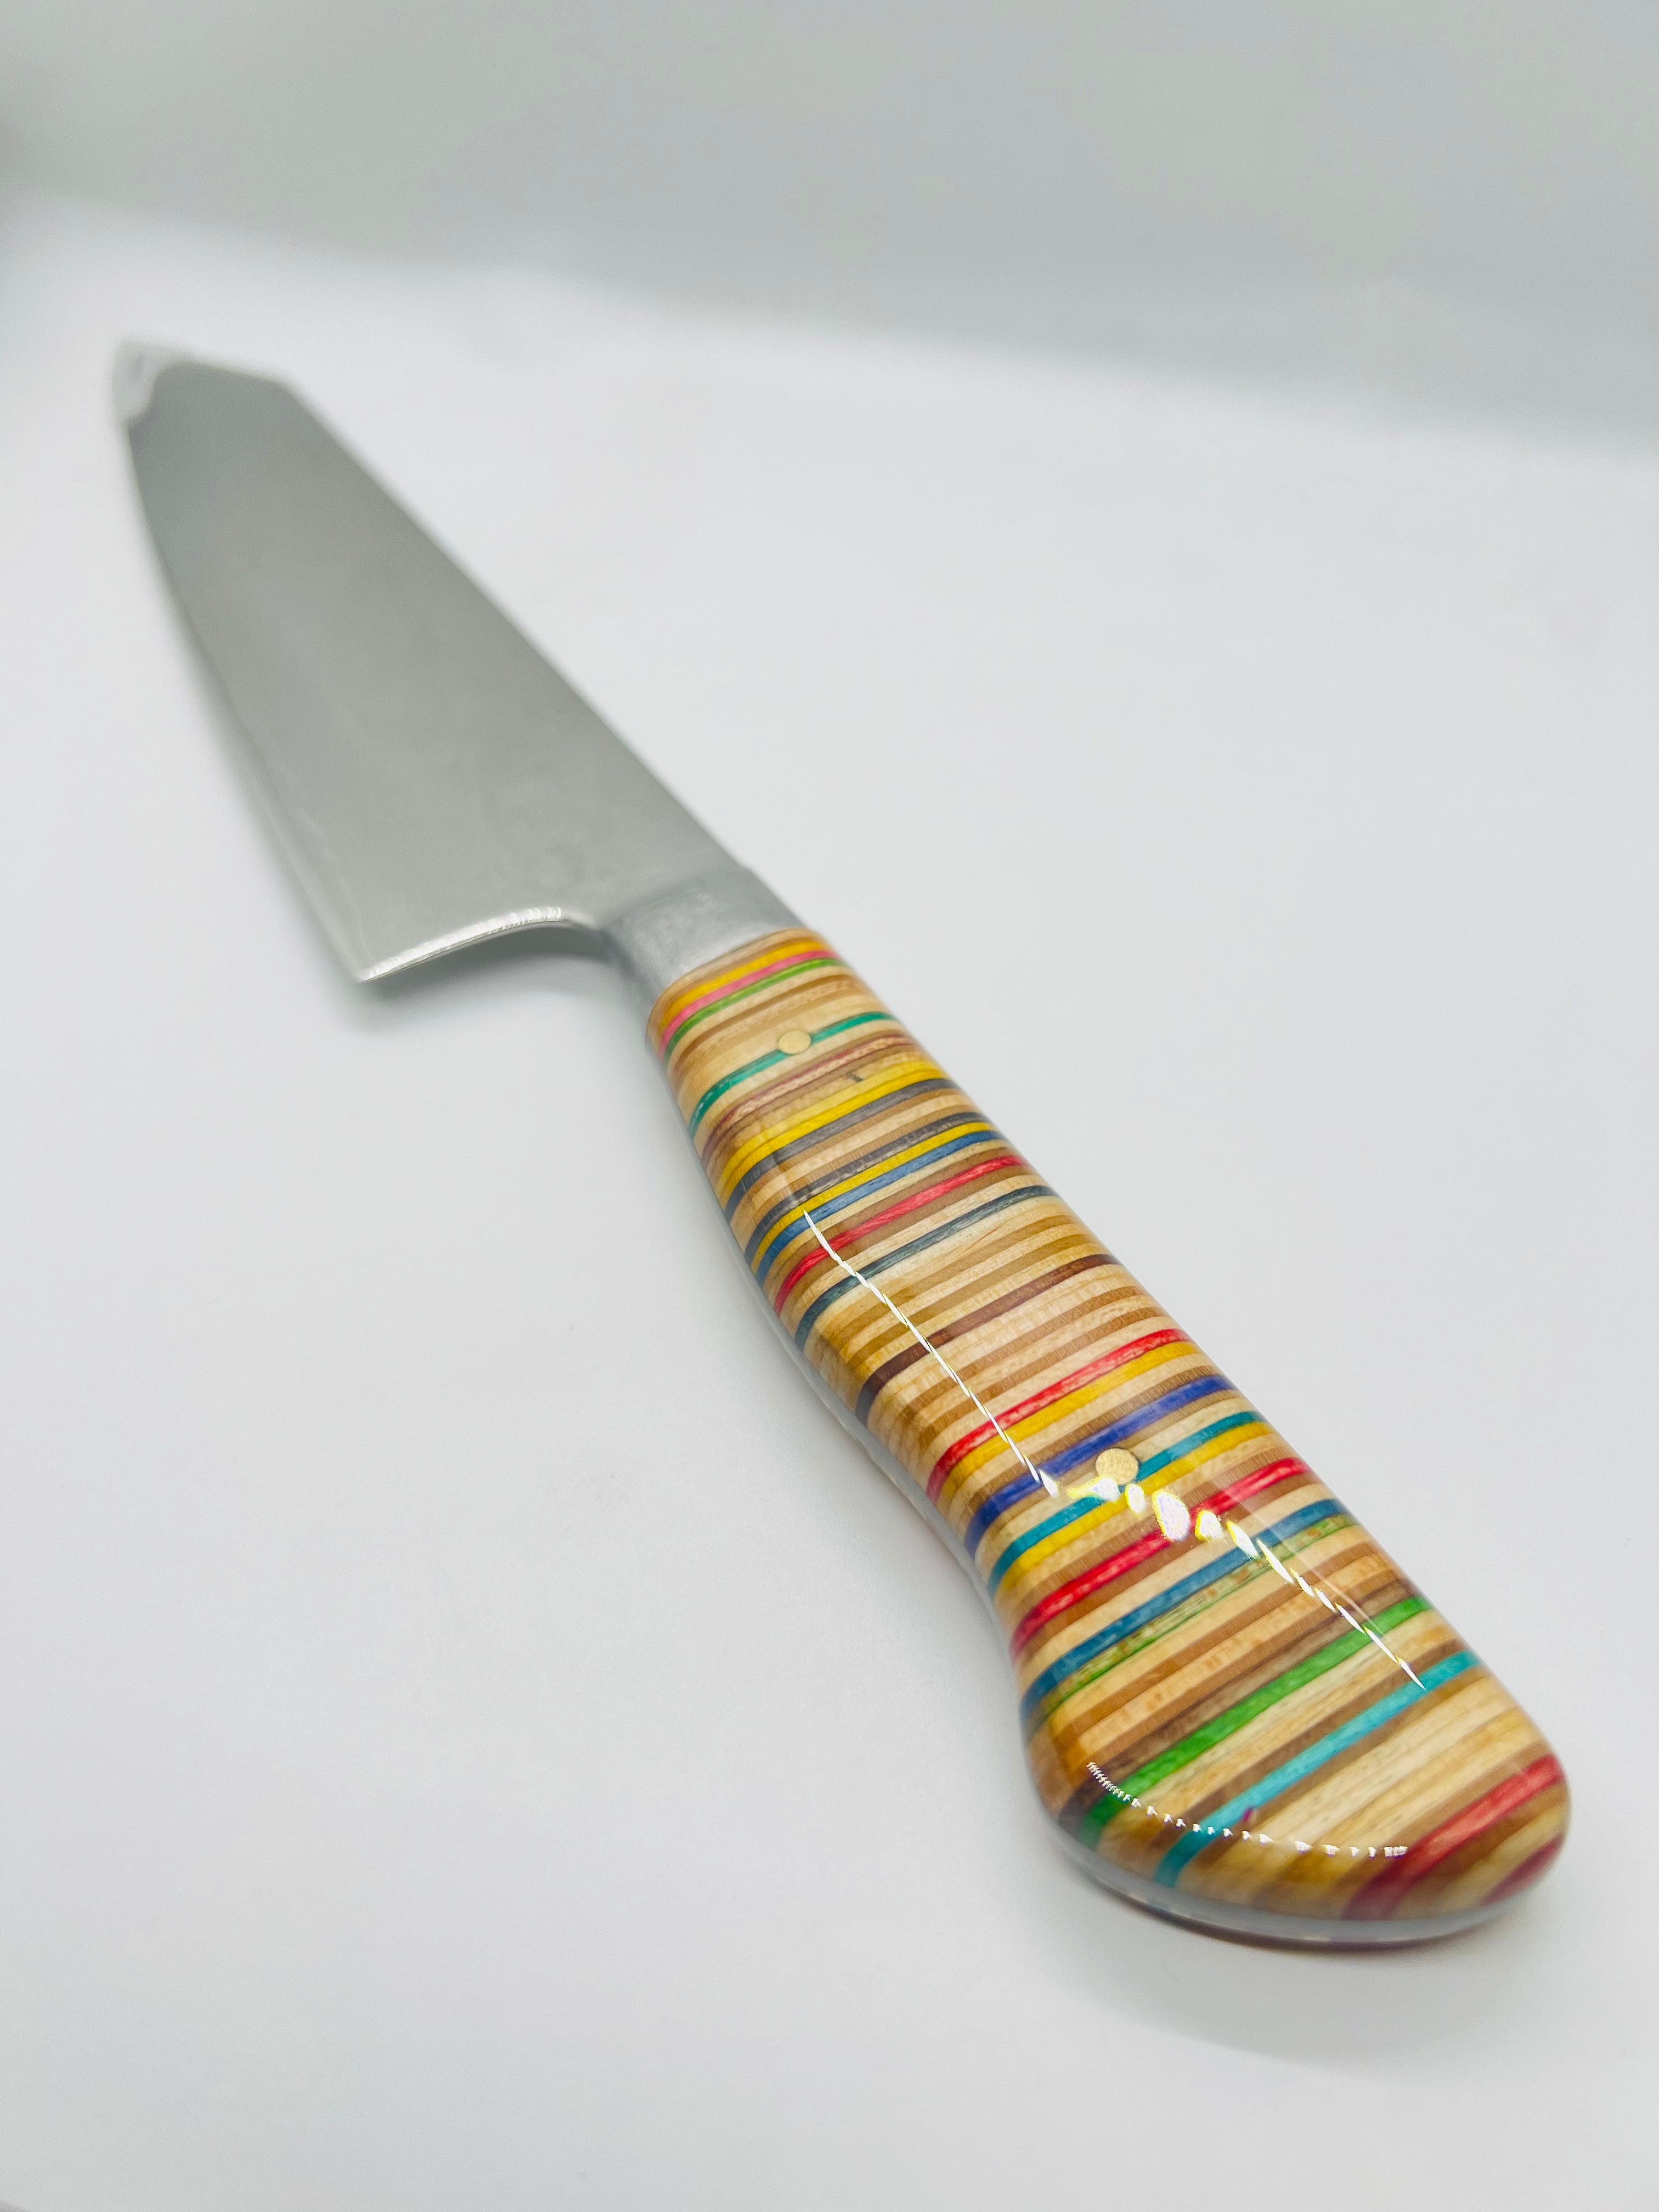 Damascus Steel Kitchen Knives – Chefs Edge - Handmade Japanese